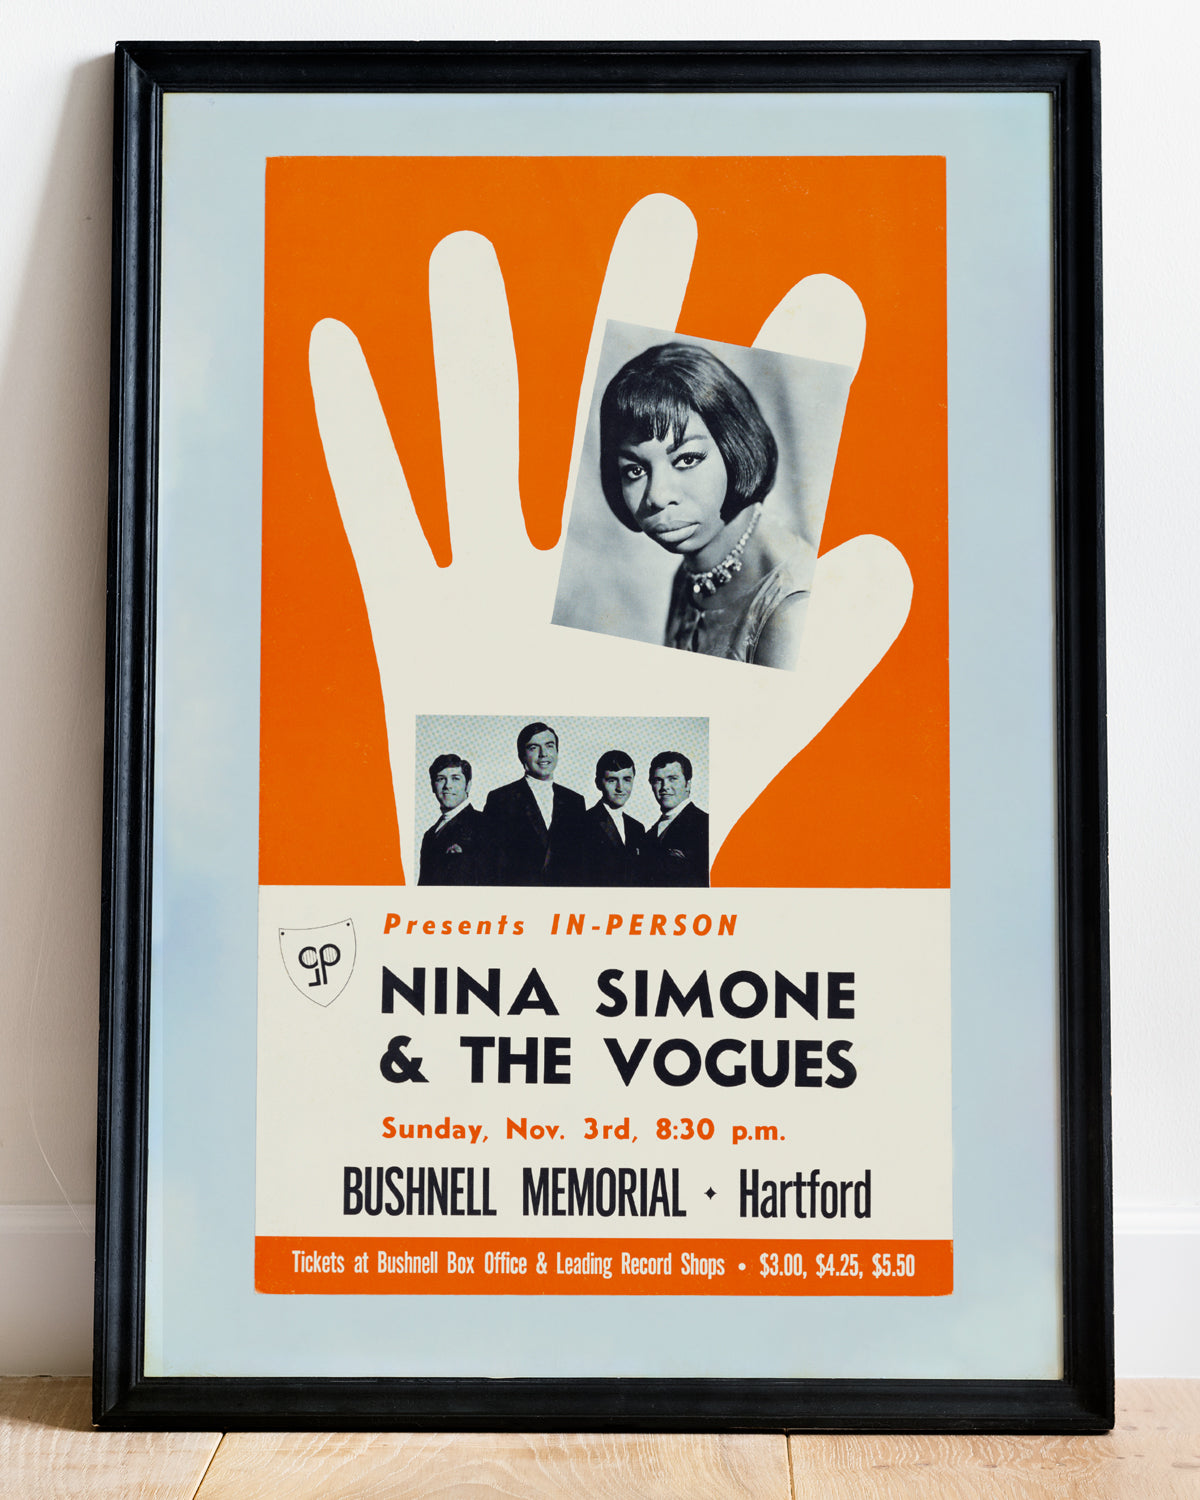 Plakat für ein Konzert von Nina Simone und The Vogues